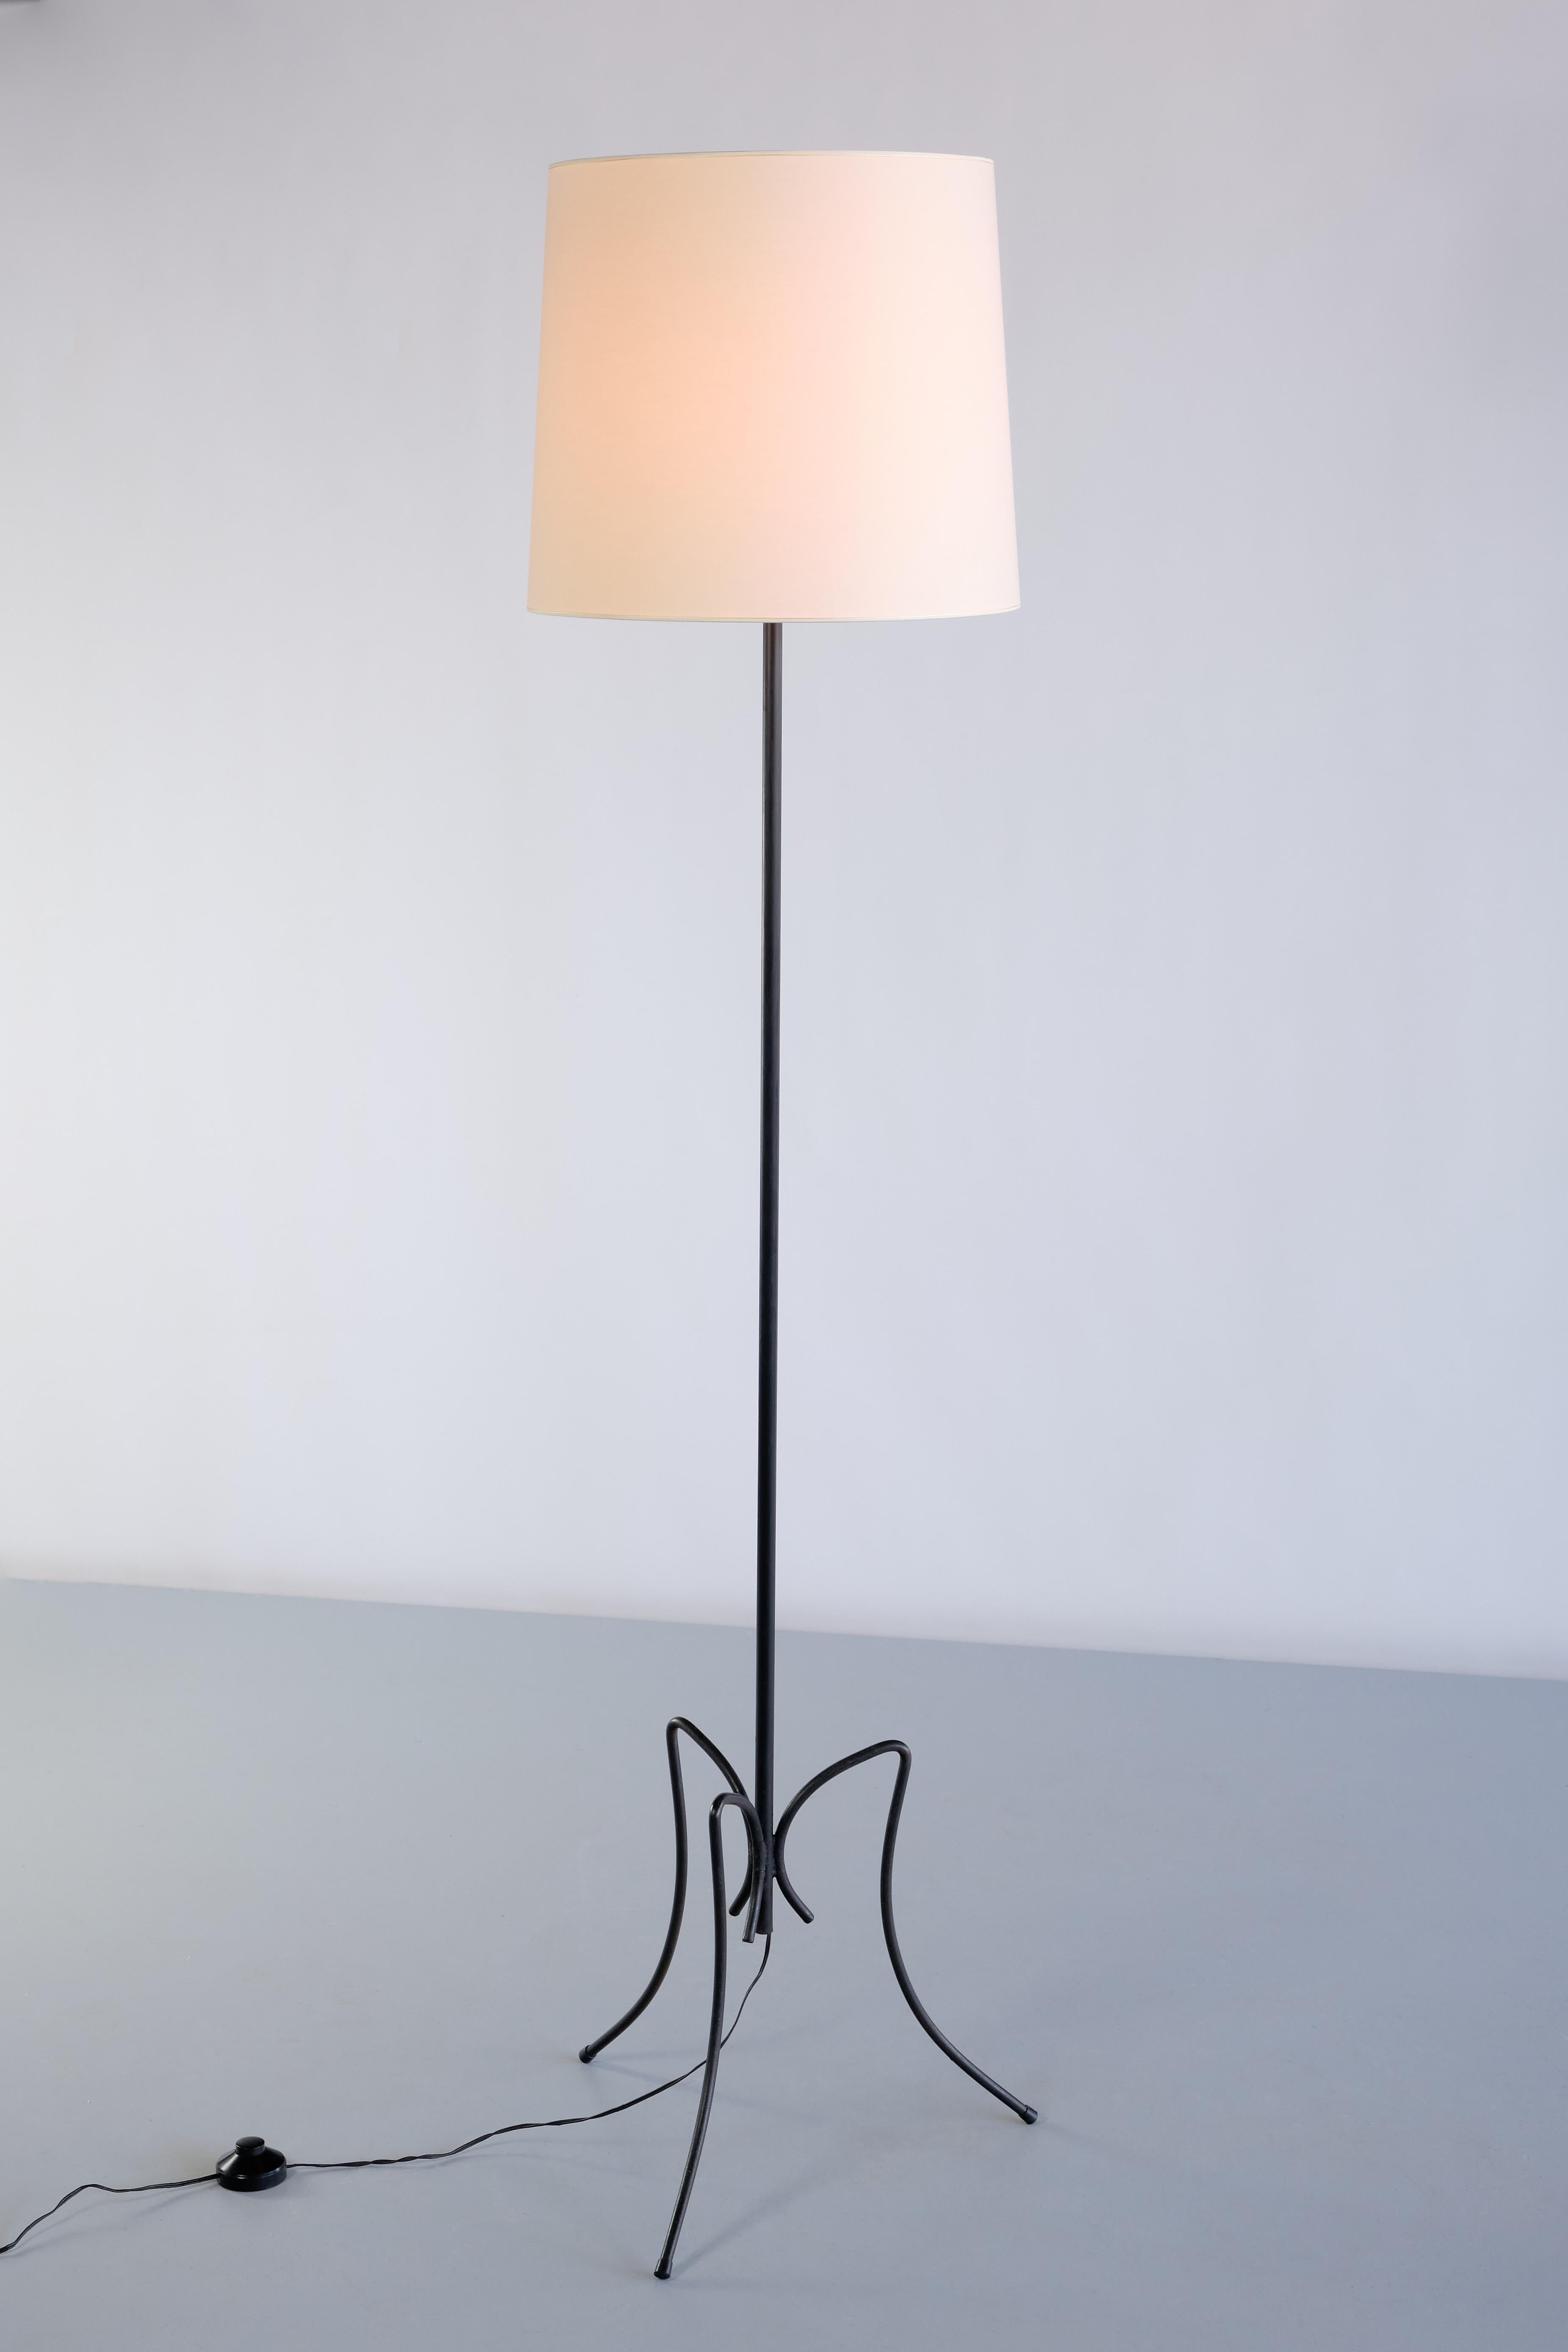 Diese auffällige Stehlampe wurde in den frühen 1950er Jahren in Frankreich hergestellt. Die Leuchte besteht aus einem dreibeinigen Fuß und einem dünnen Stiel, alles aus schwarz lackiertem Eisen. Die nach außen gebogenen Eisenbeine verleihen der